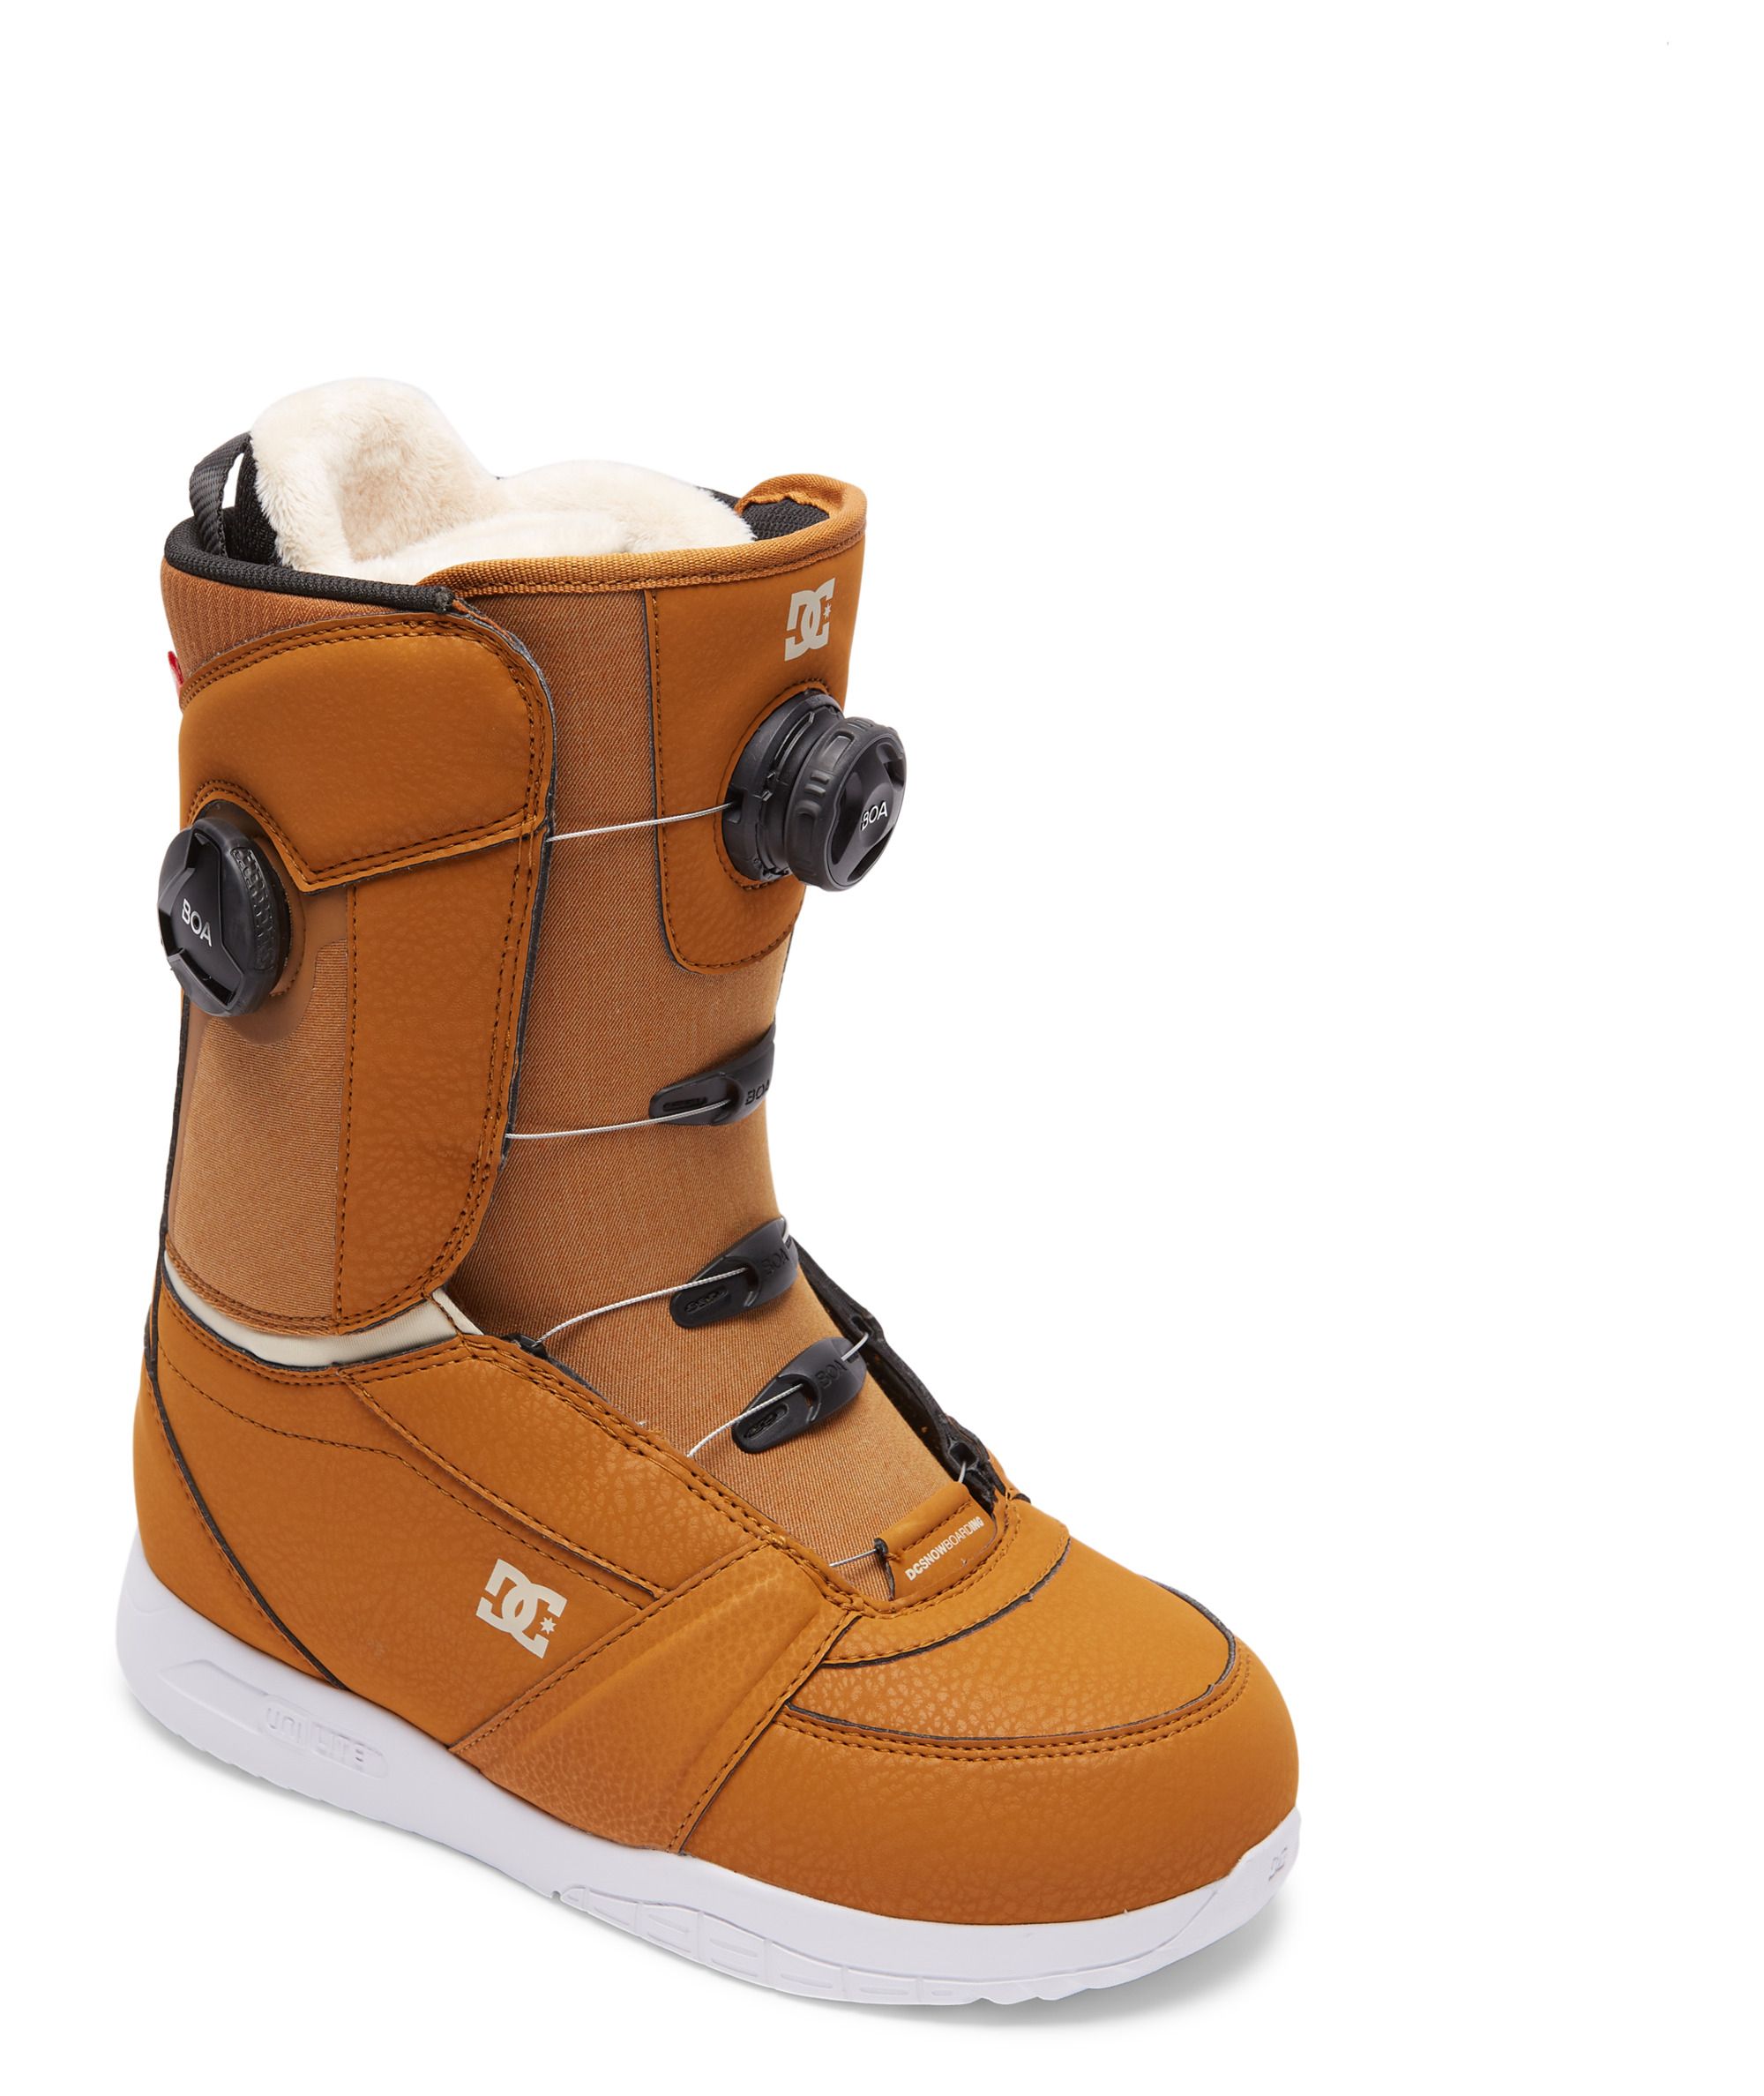 Boots de snowboard Lotus Choco Brown 